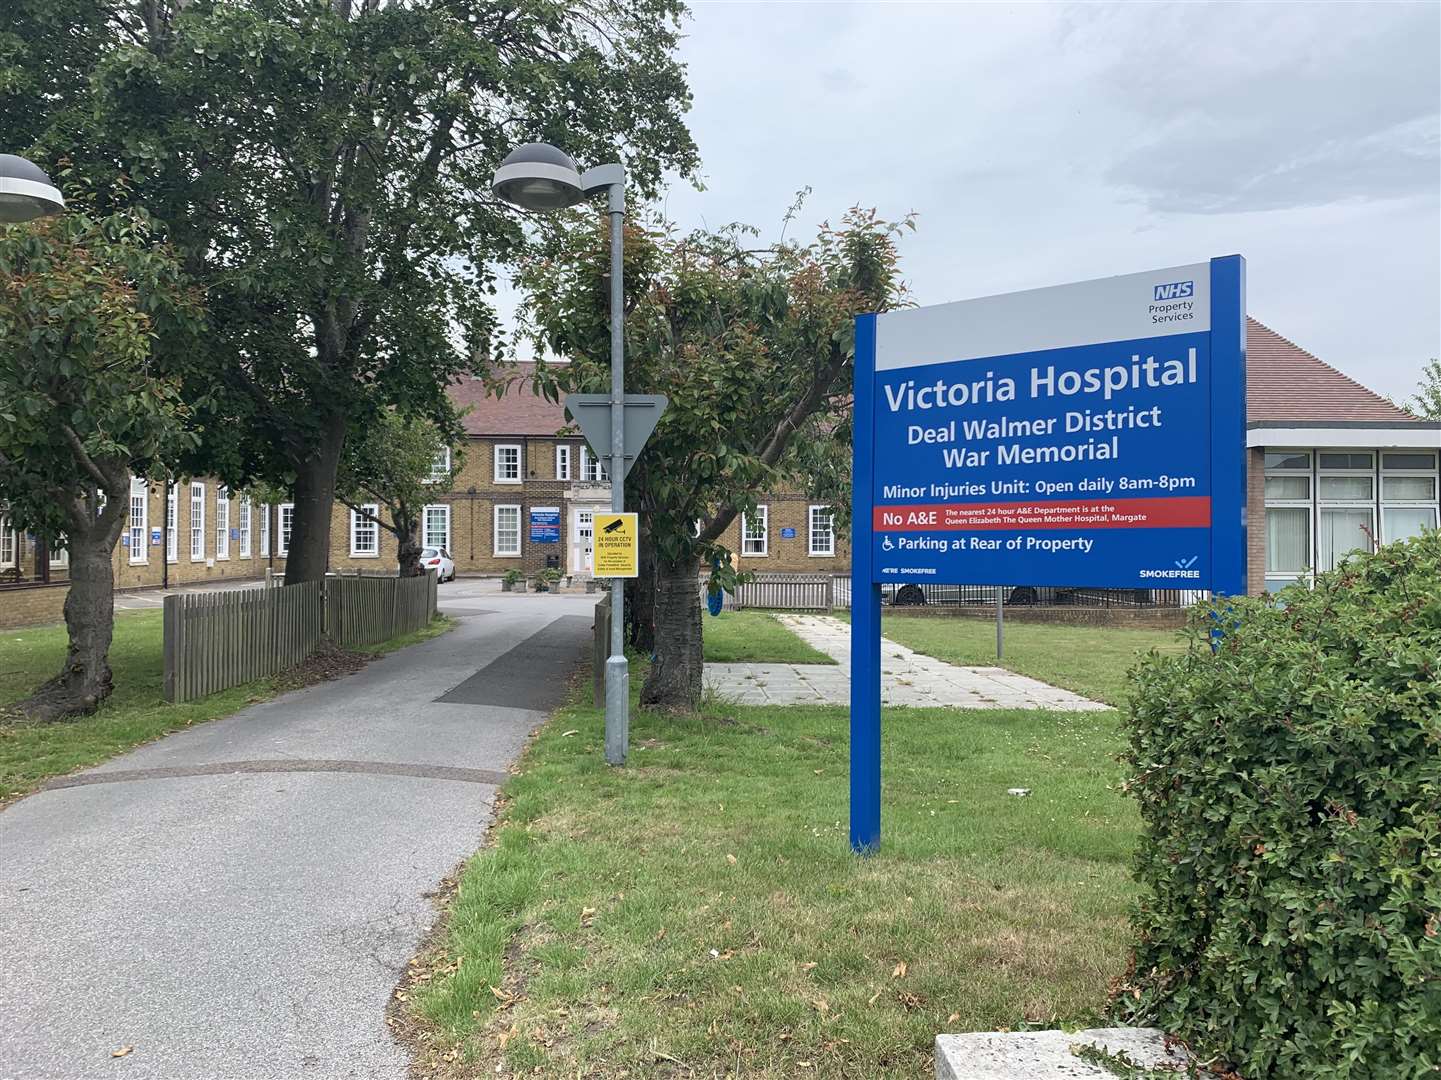 Deal's Victoria Hospital